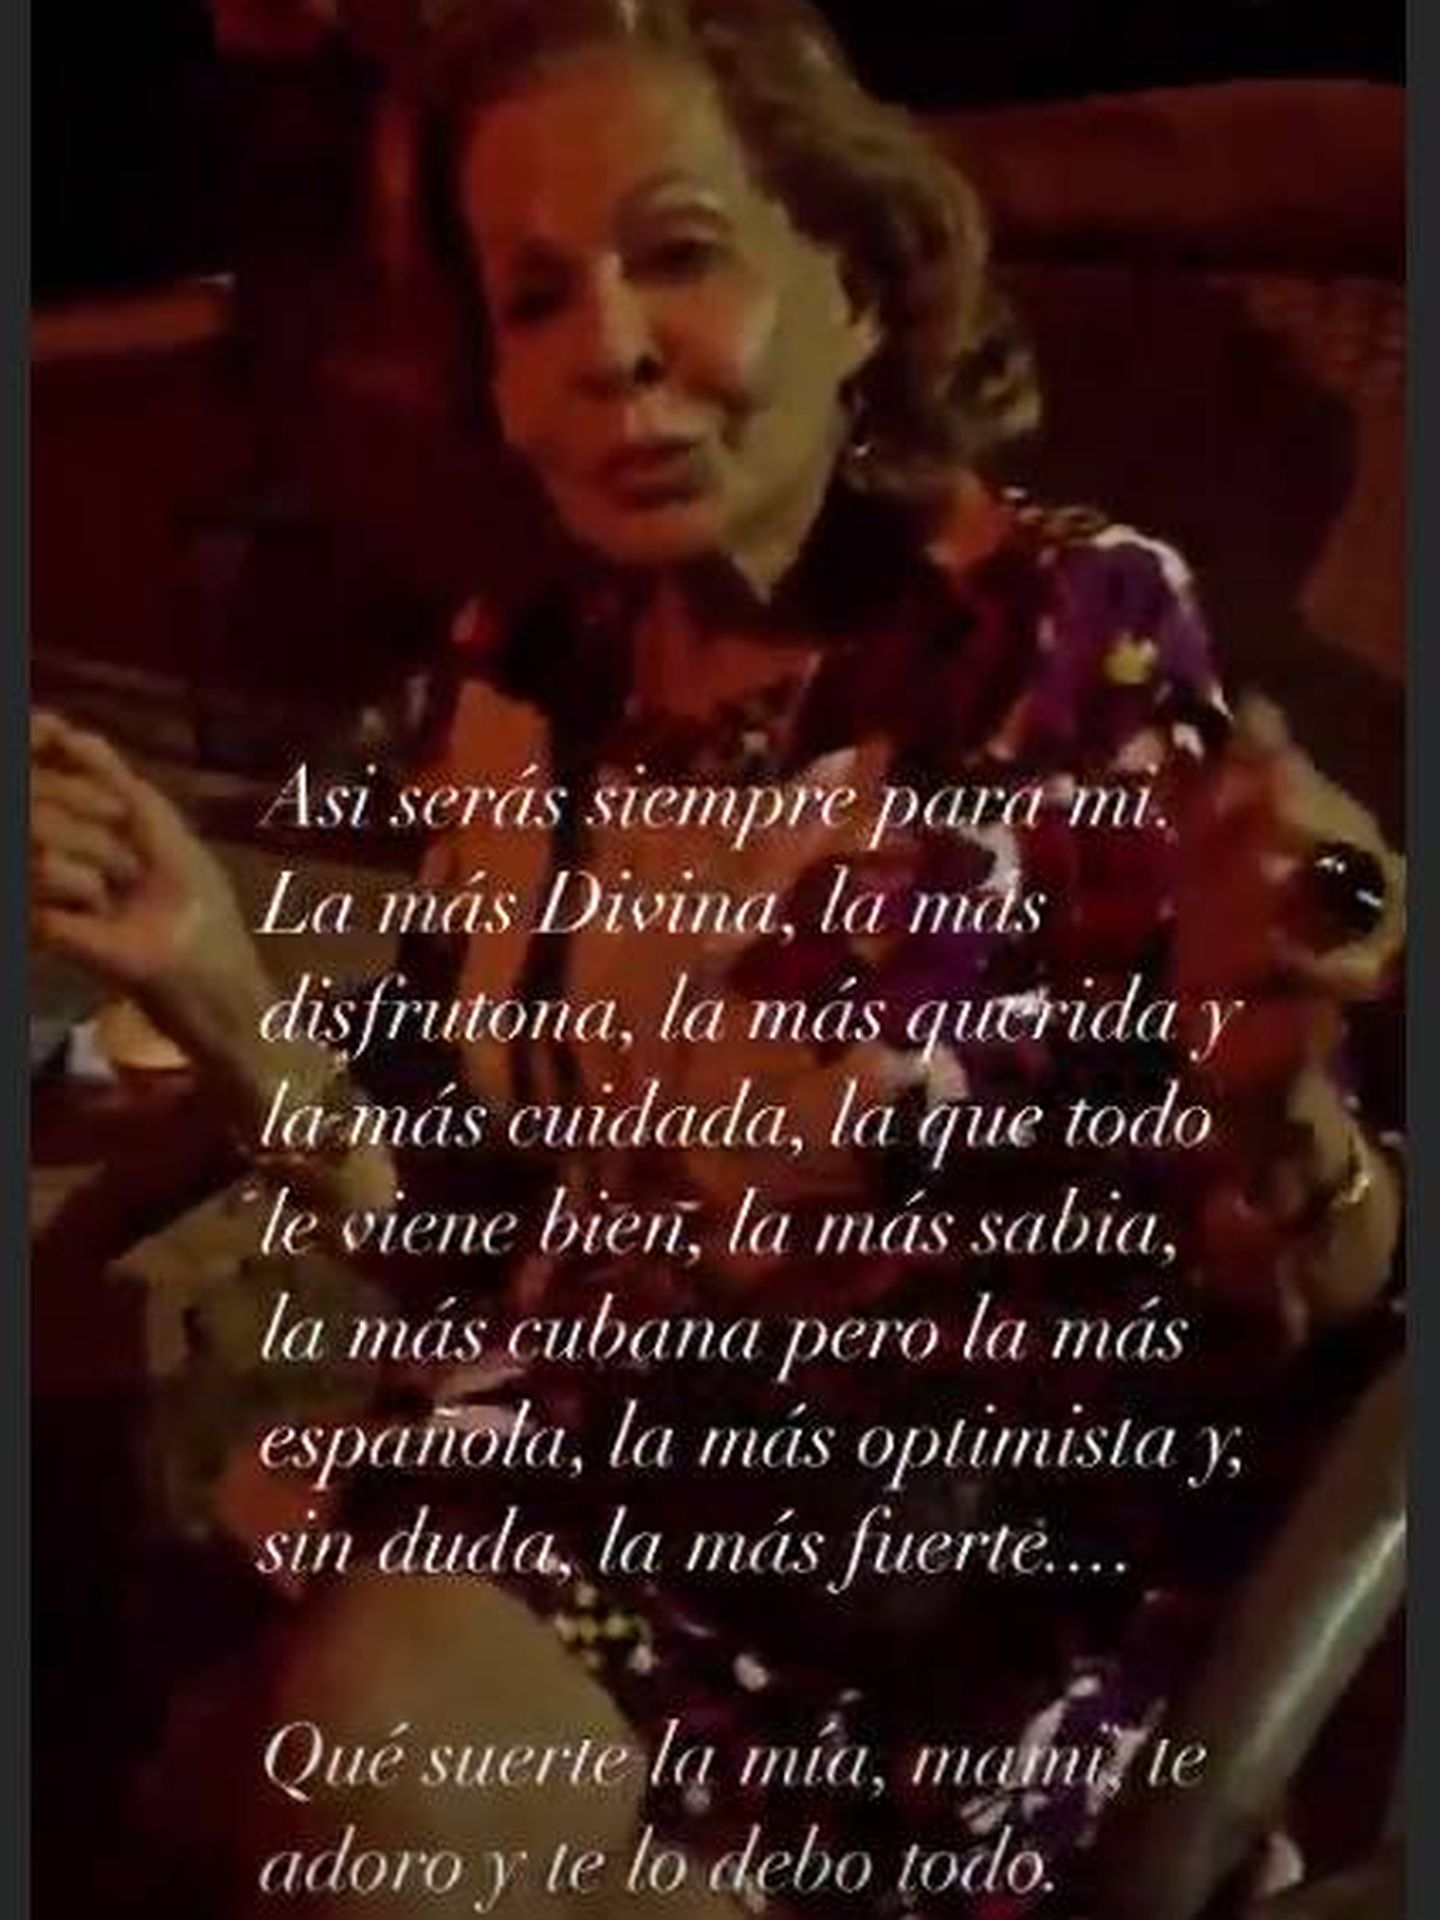 El mensaje de Elena Tablada. (RRSS)